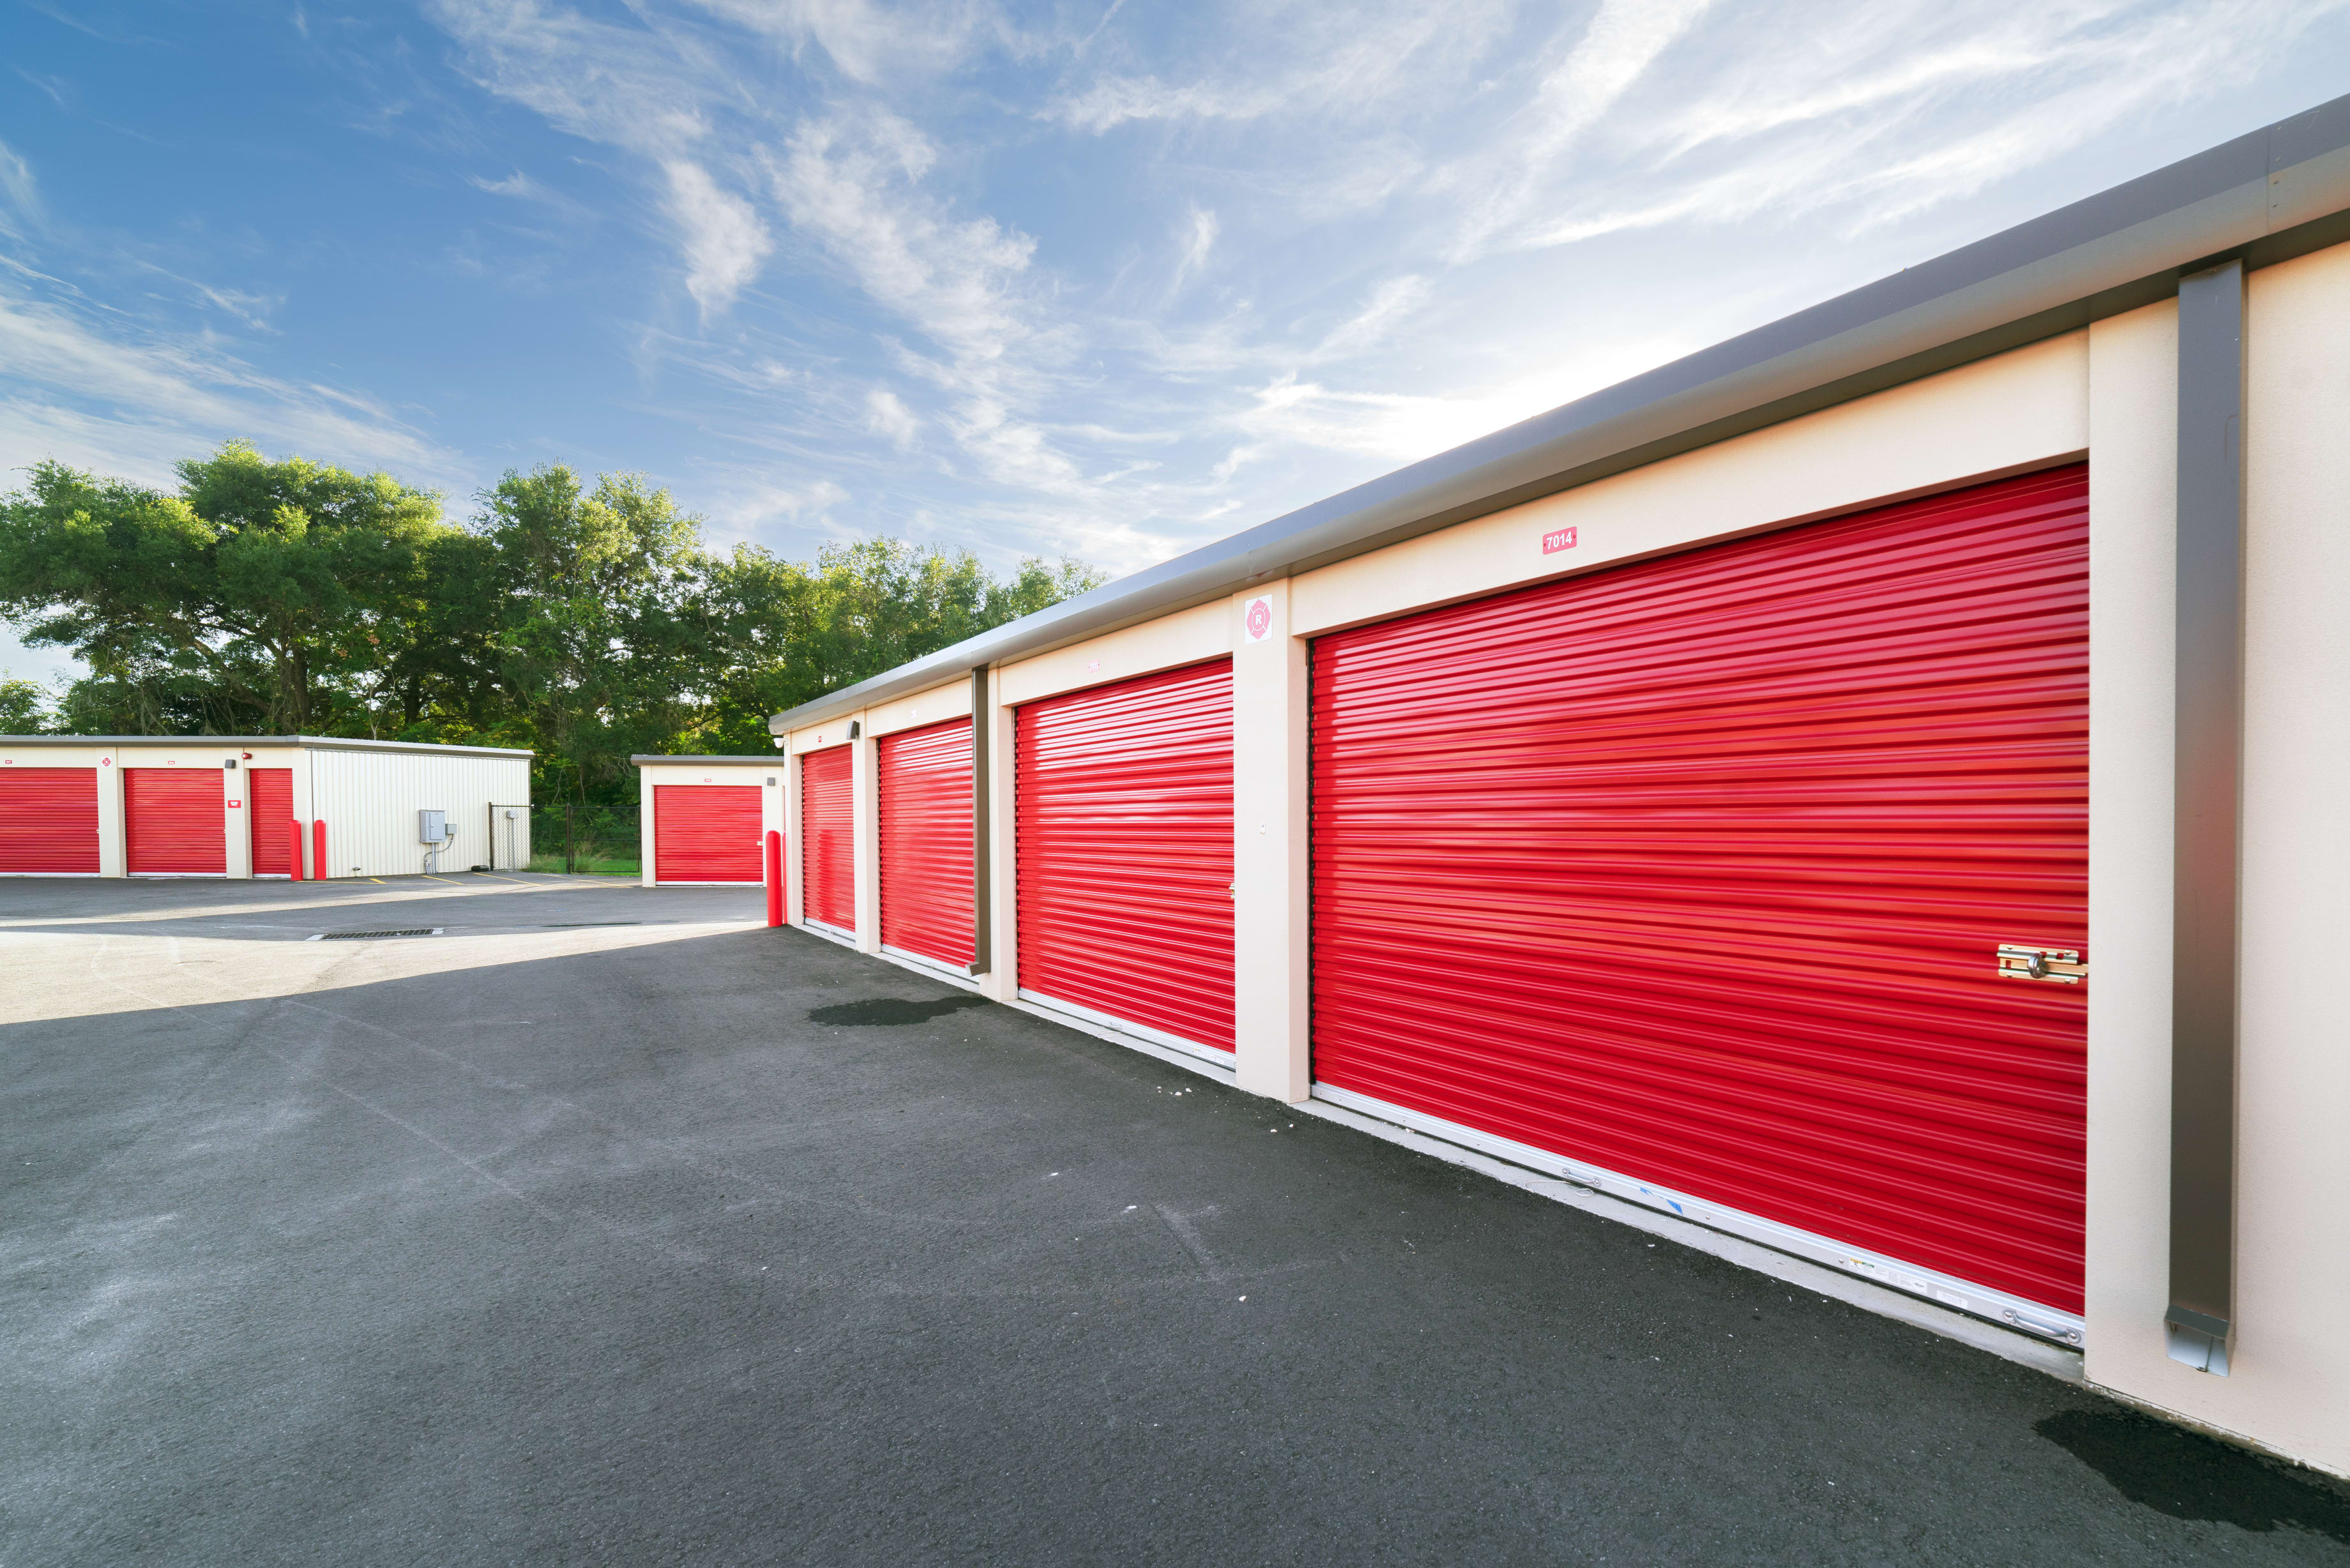 Garage storage entrances at Your Storage Units Apopka in Apopka, Florida